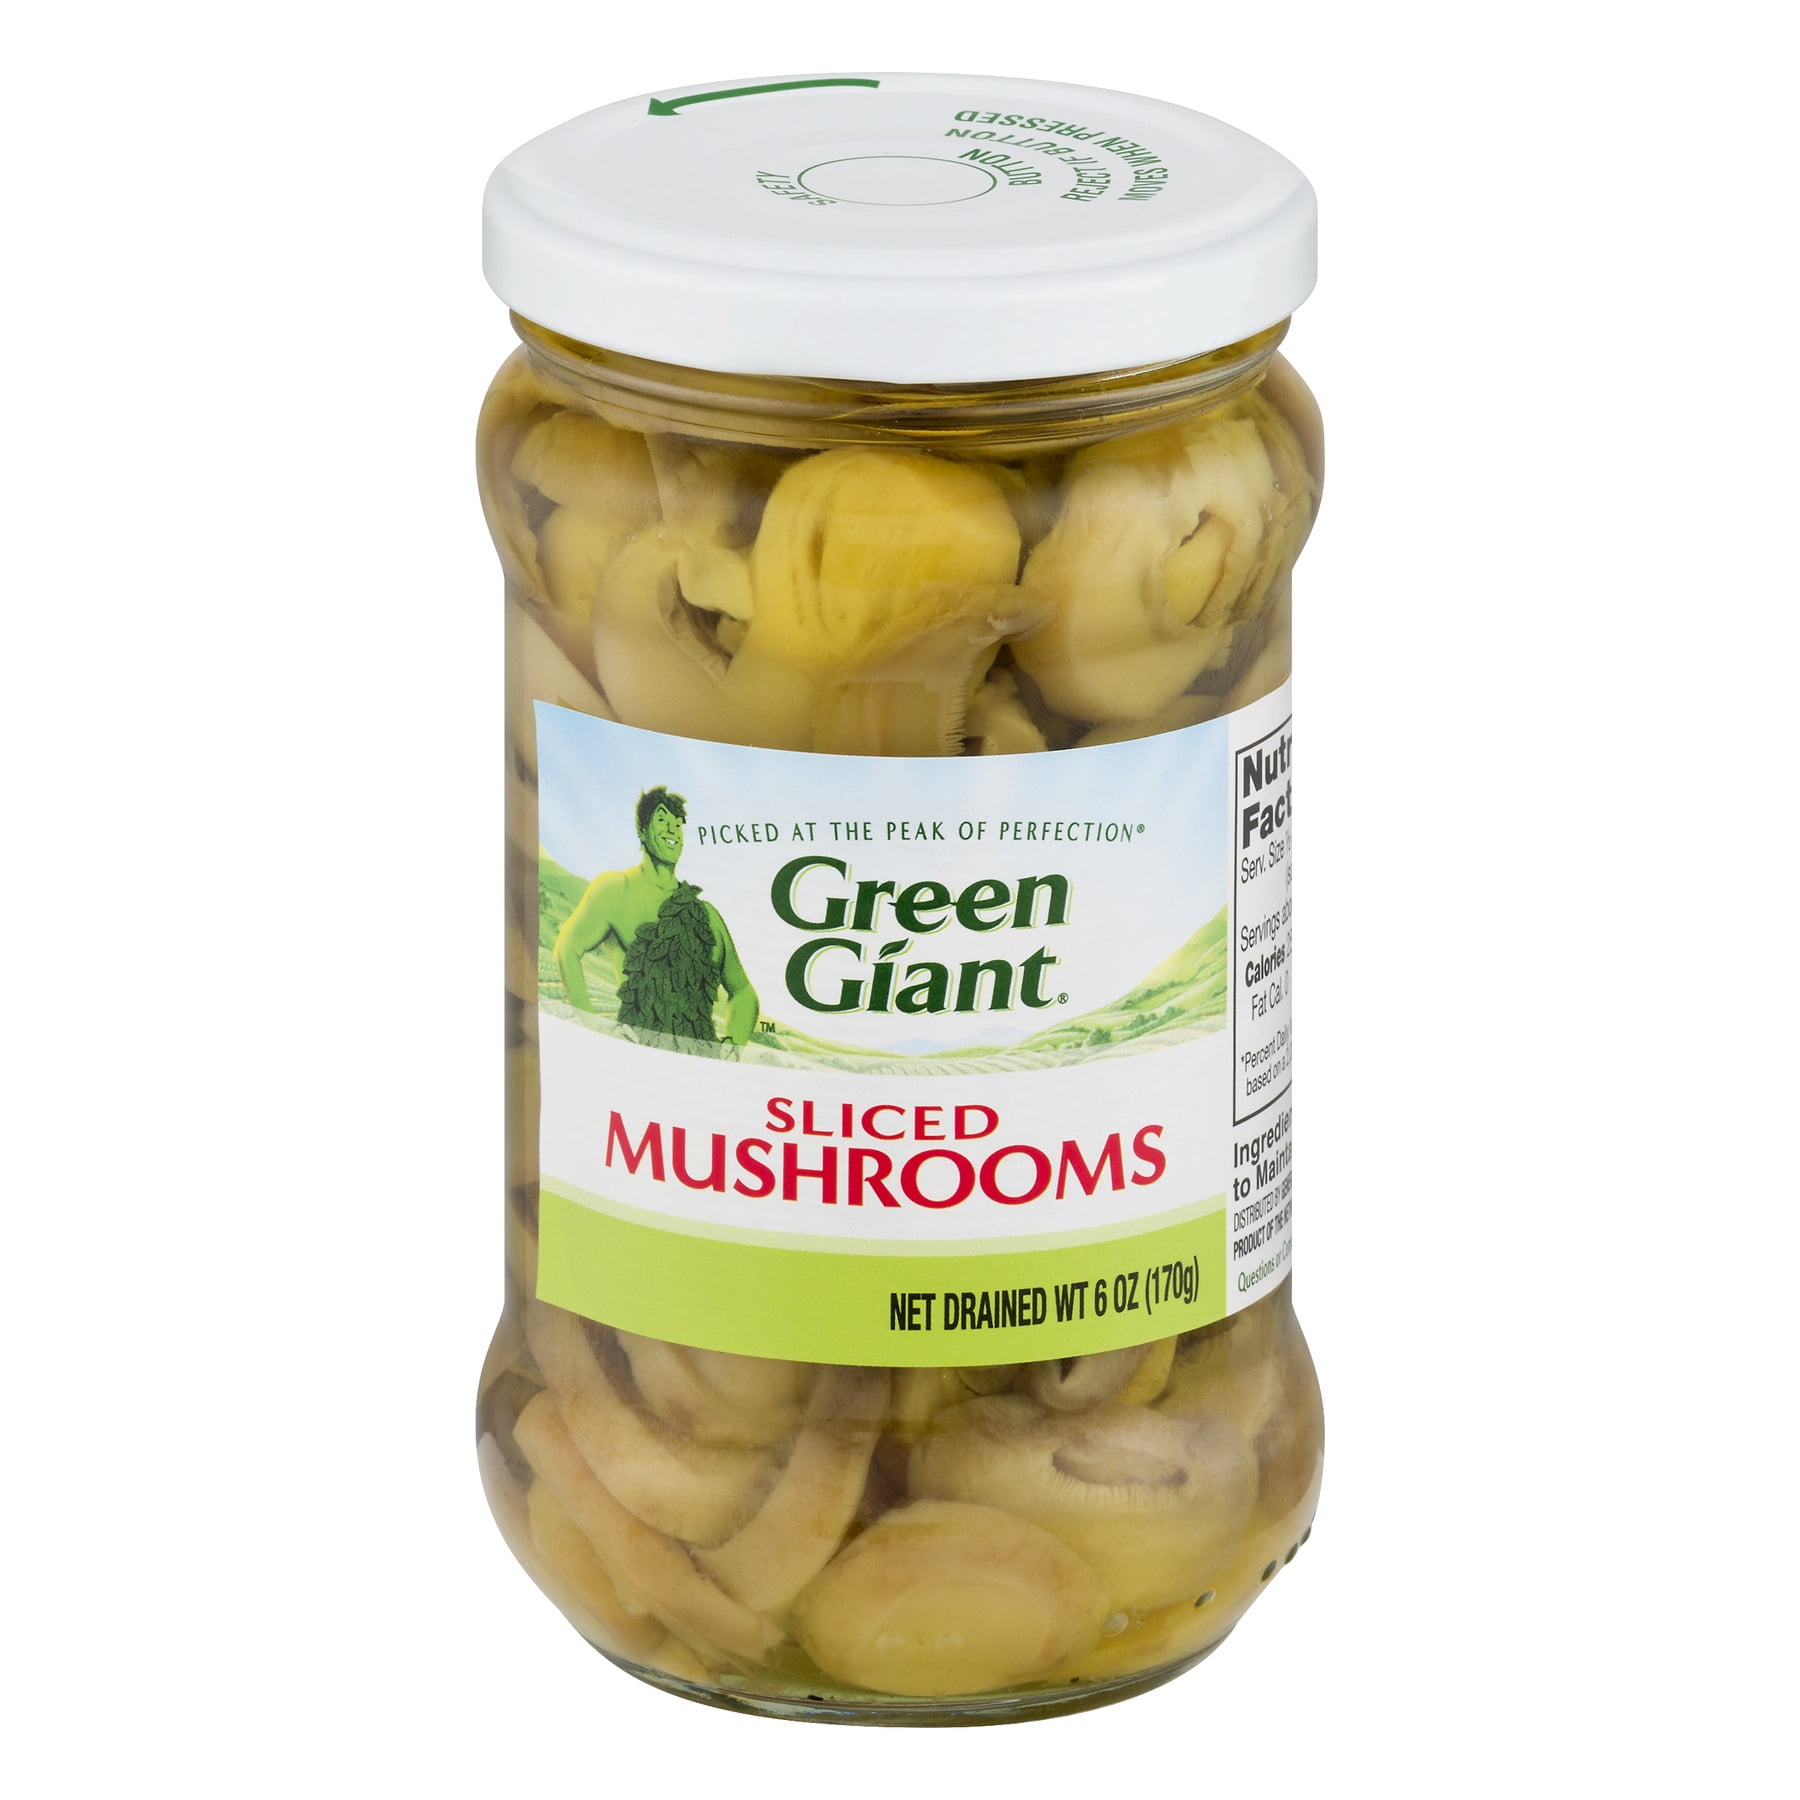 Green Giant Sliced Mushrooms, 6 oz